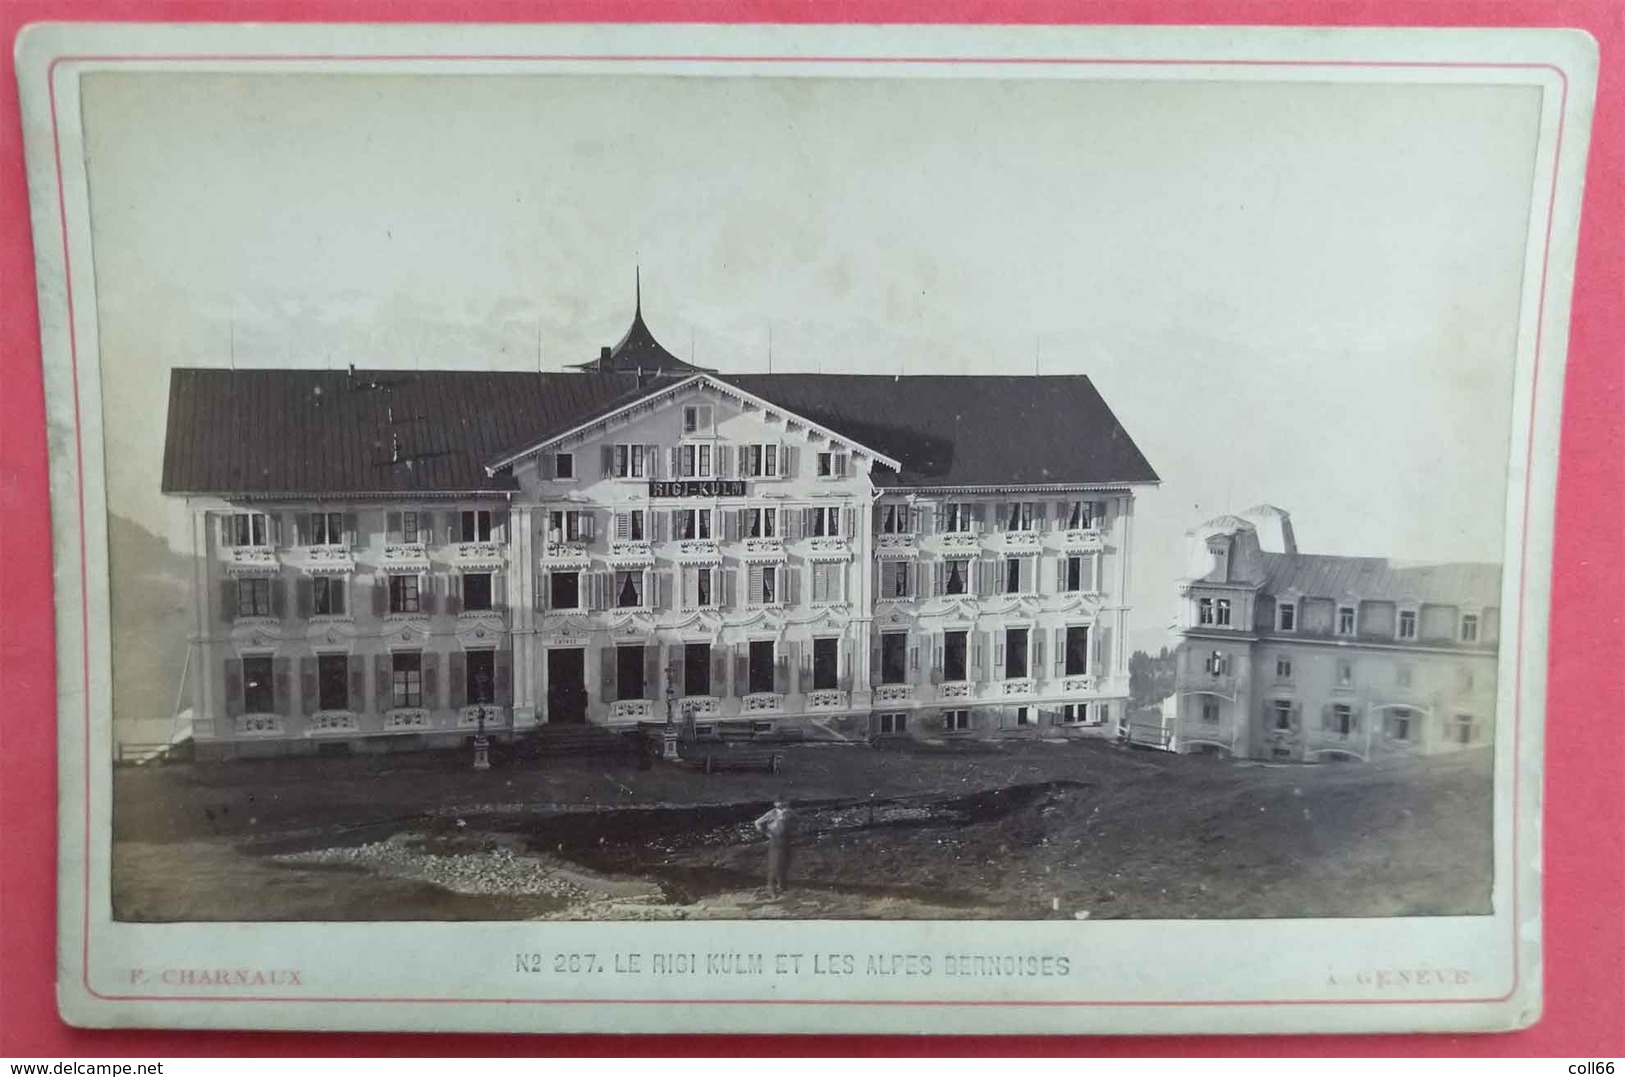 1879-80 Photo Sur Carton Le Rigi Kulm  Et Les Alpes Bernoises éditeur Charnaux N°267 Maison Des 3 Rois Genève Suisse - Antiche (ante 1900)